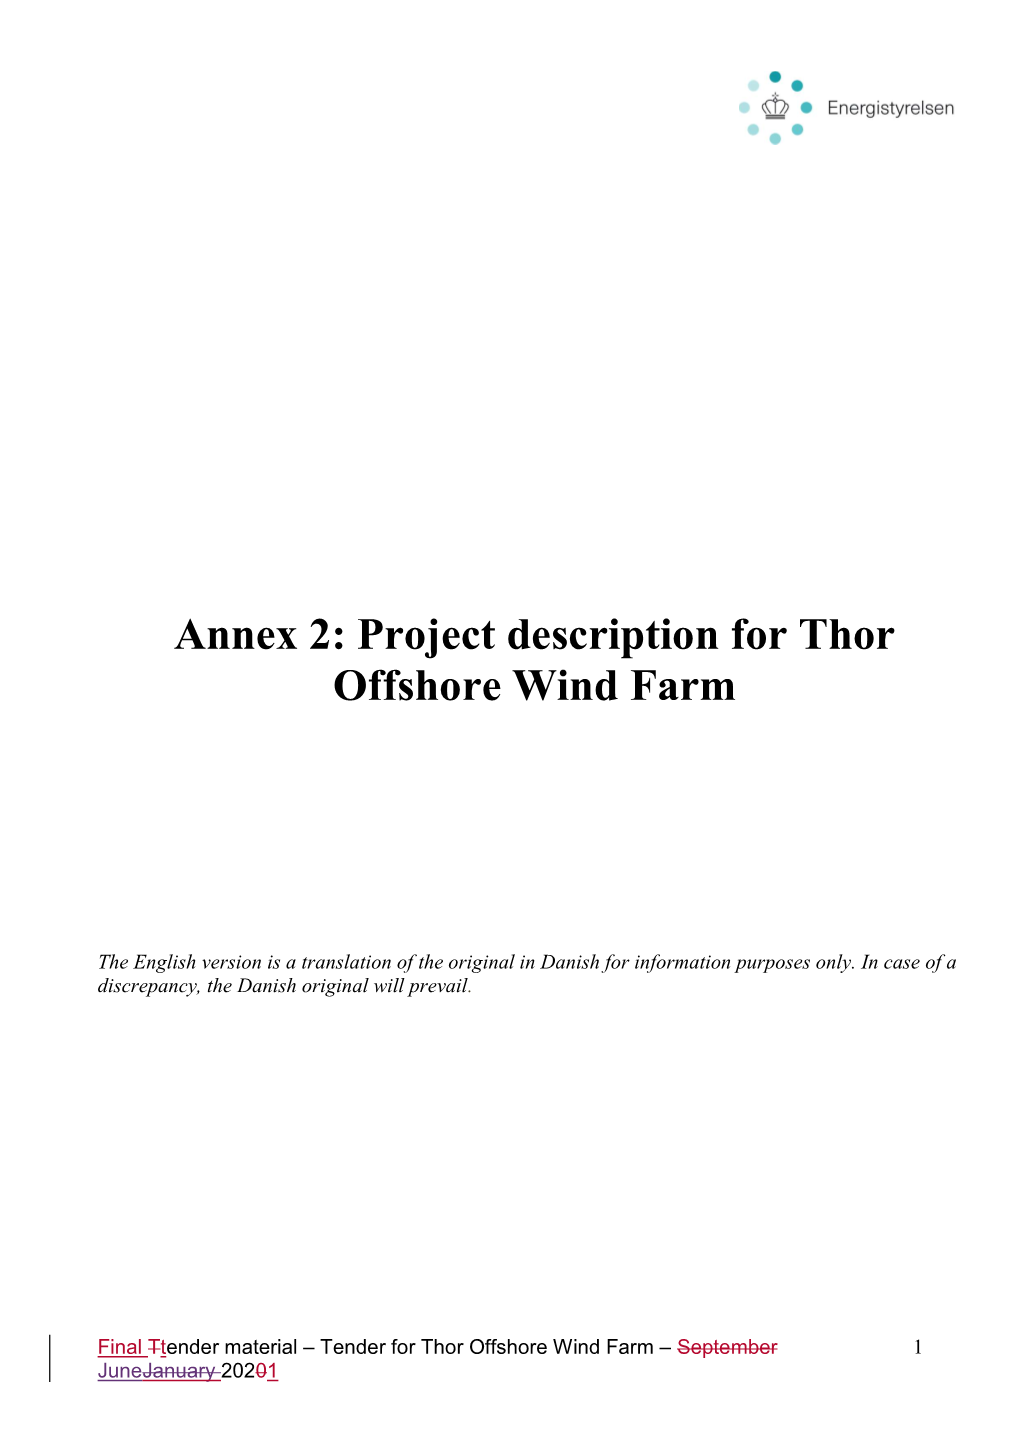 Annex 2: Project Description for Thor Offshore Wind Farm